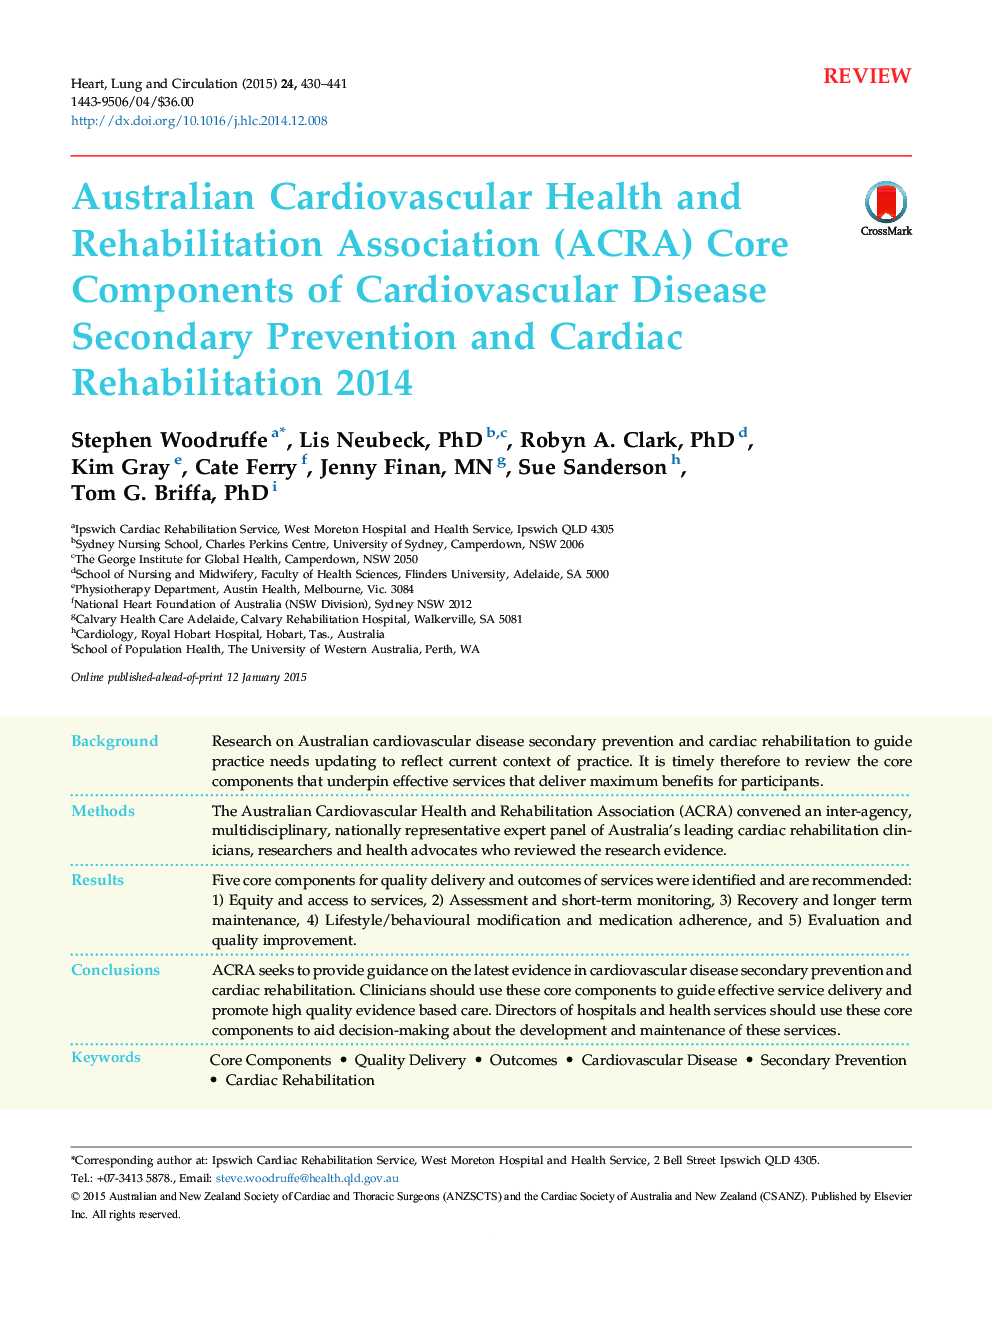 Australian Cardiovascular Health and Rehabilitation Association (ACRA) Core Components of Cardiovascular Disease Secondary Prevention and Cardiac Rehabilitation 2014